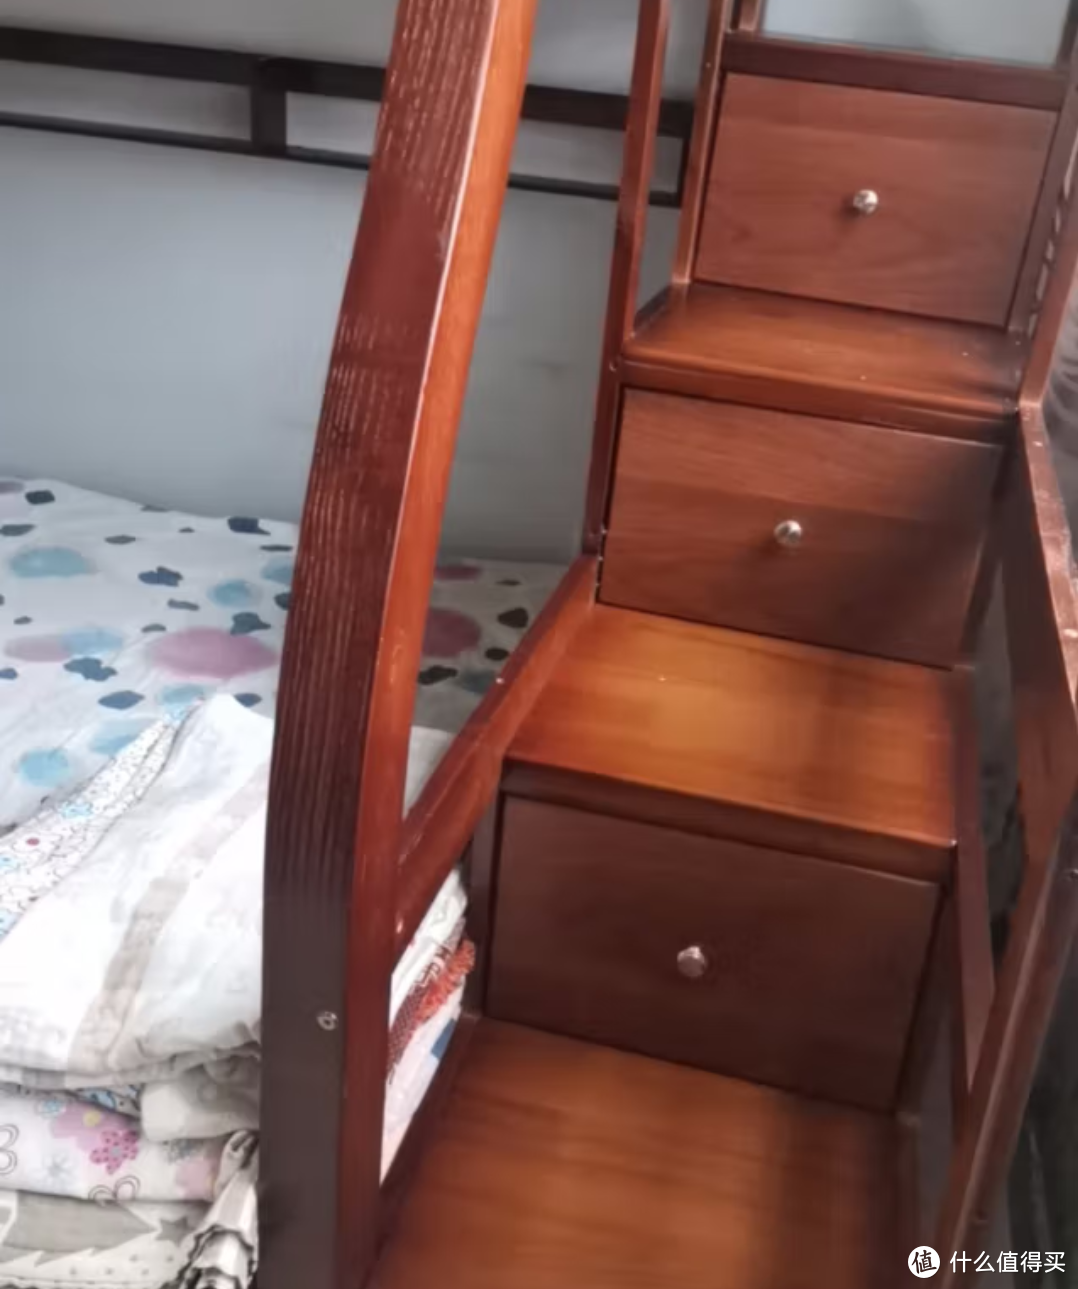 打造儿童房上下床是一种非常有创意和实用性的设计方式